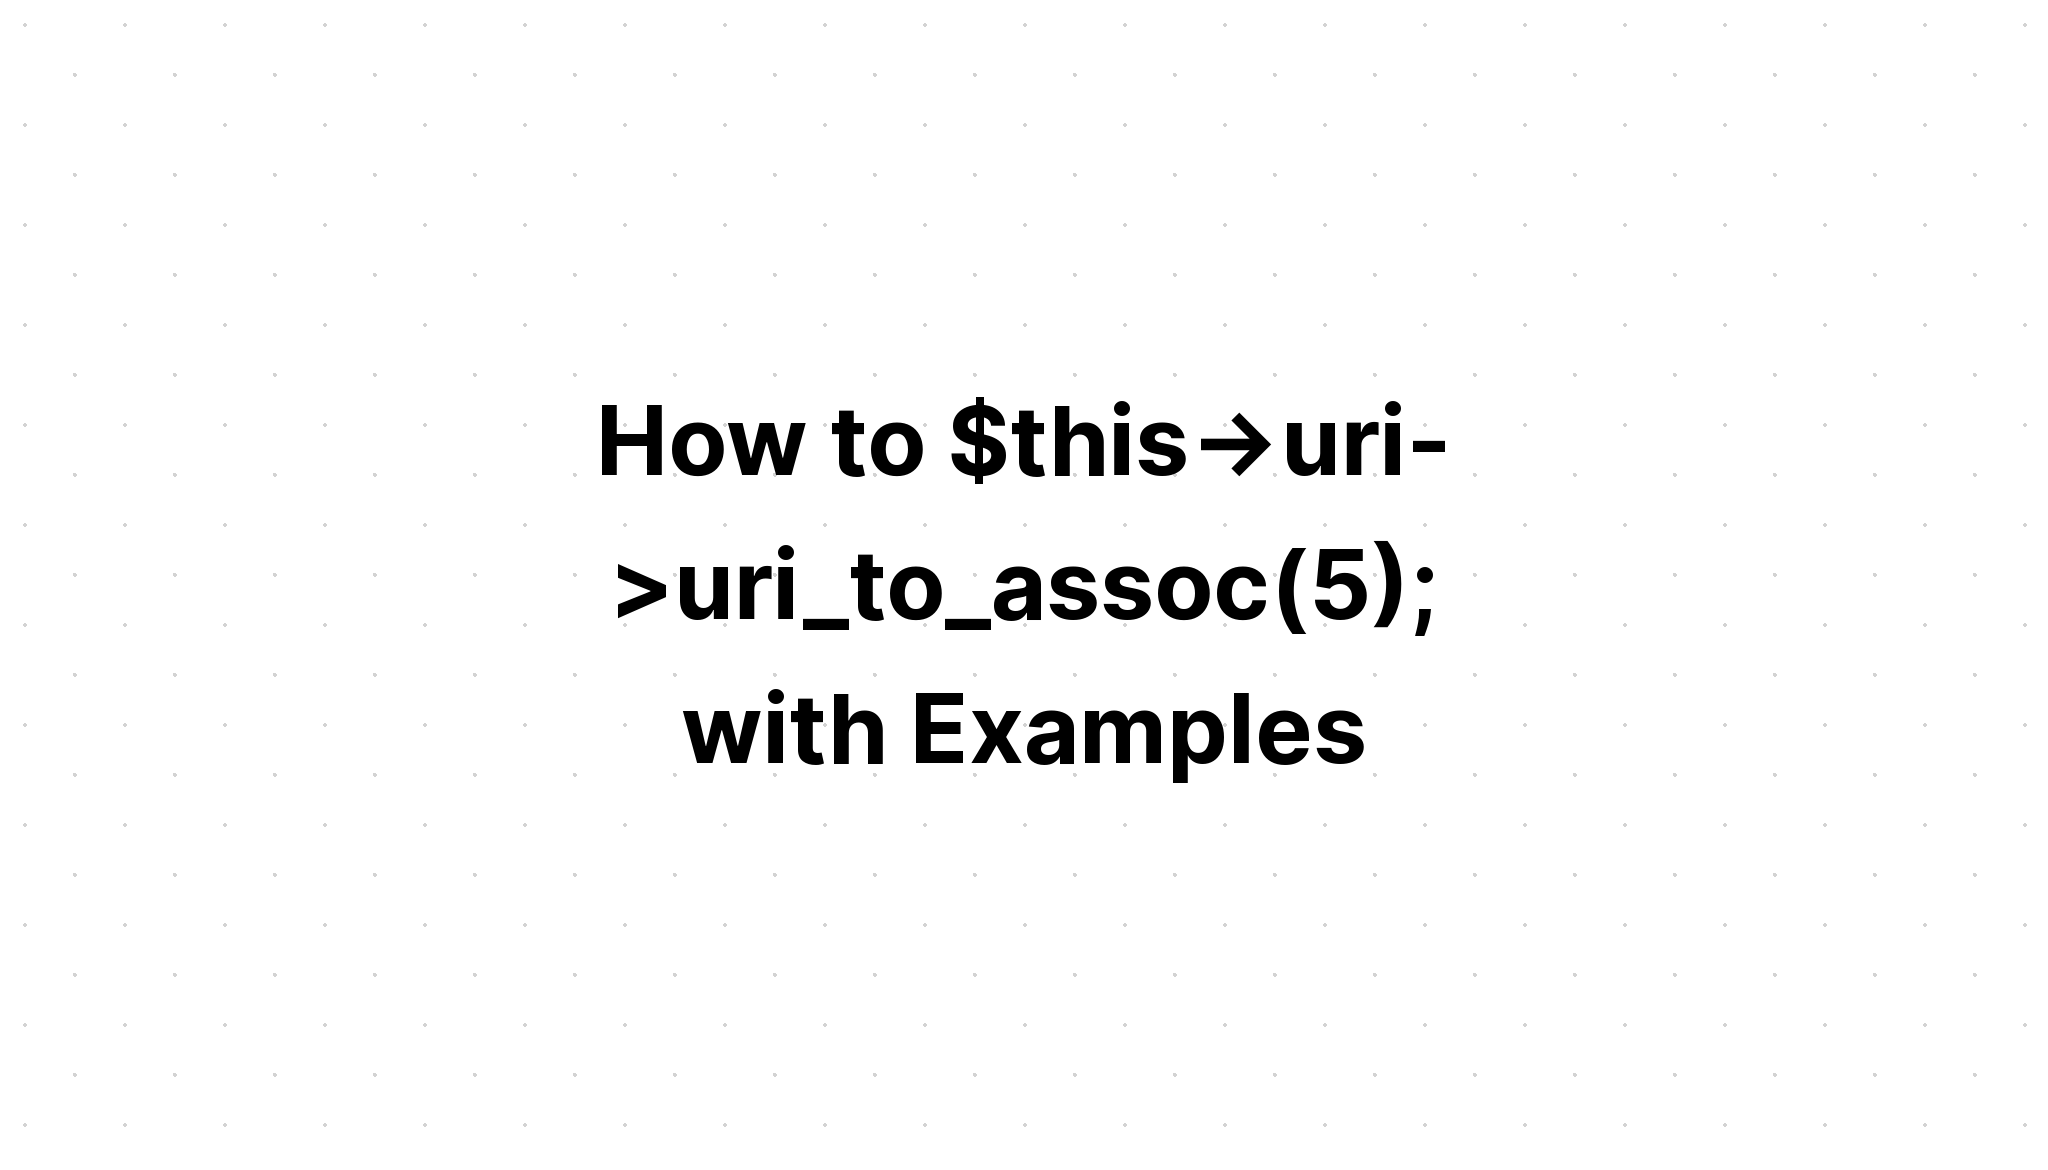 Cách $this->uri->uri_to_assoc(5); 